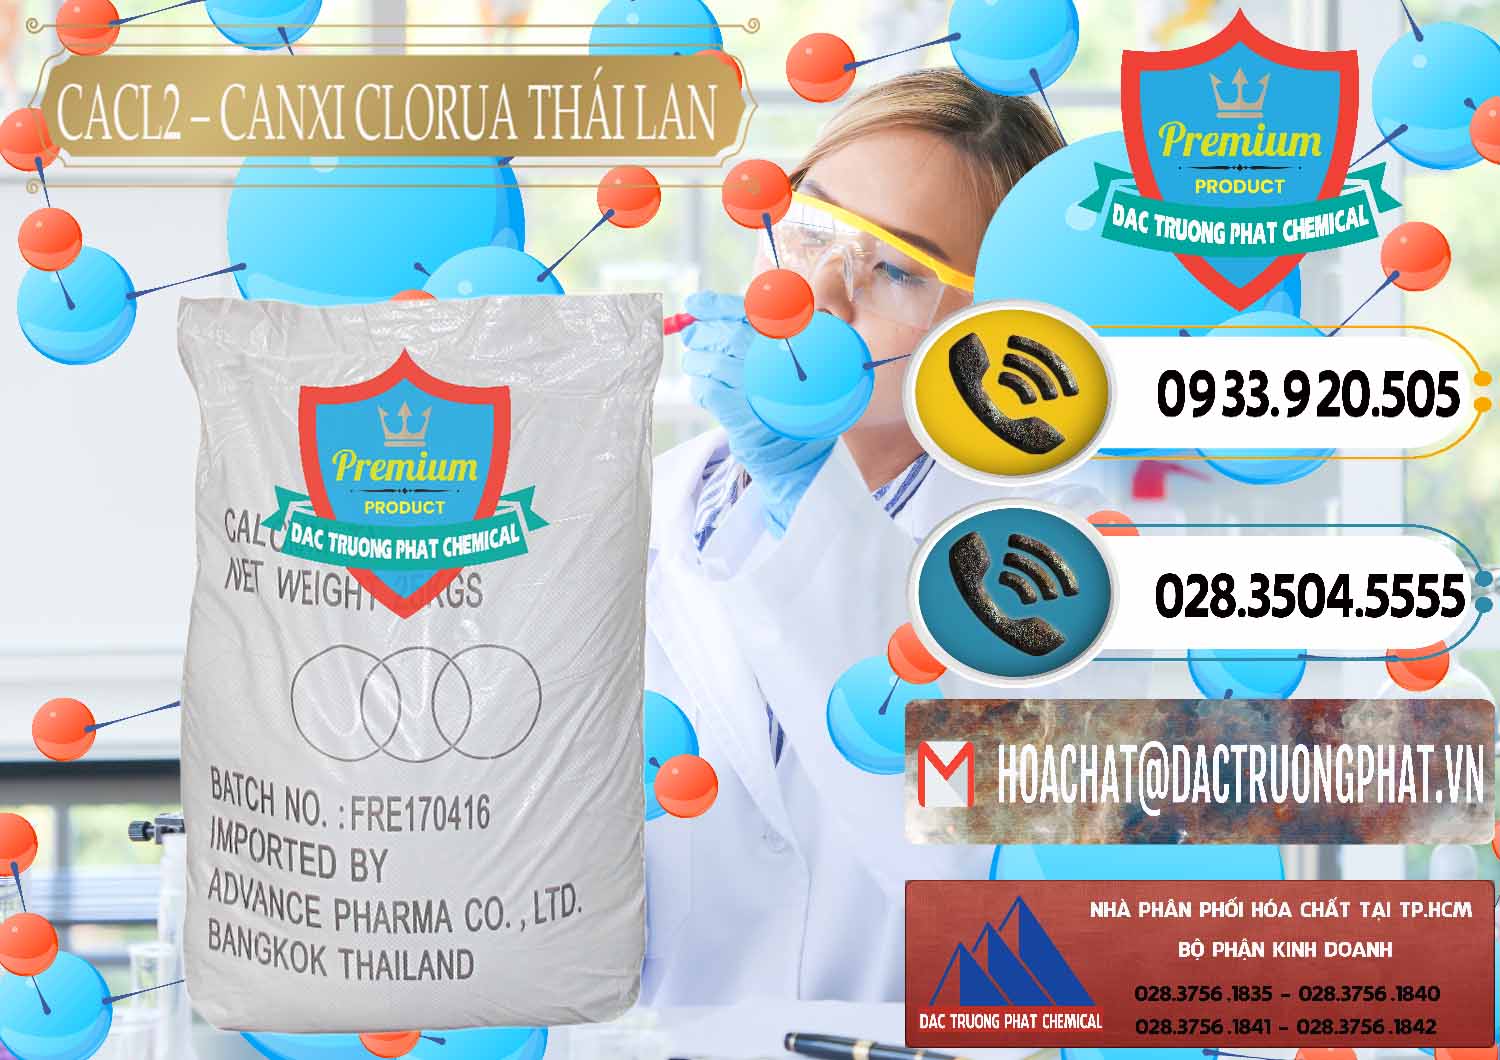 Nơi chuyên kinh doanh _ bán CaCl2 – Canxi Clorua 96% Thái Lan - 0042 - Phân phối - kinh doanh hóa chất tại TP.HCM - hoachatdetnhuom.vn